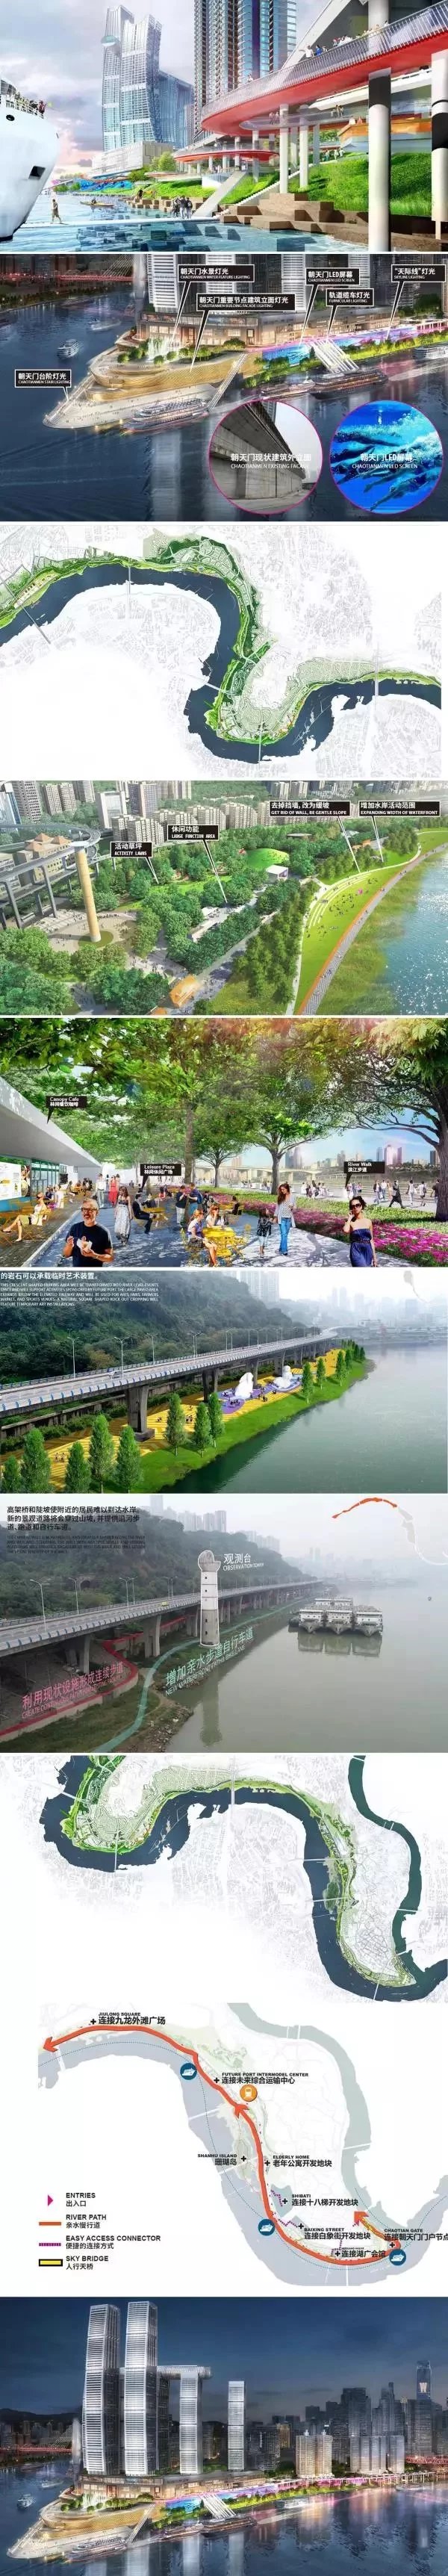  2019设计-织就城市黄金水岸-擎起绿色发展未来-某大型河流生态综合治理国际竞标资料全集（方案+视频+CAD平面+